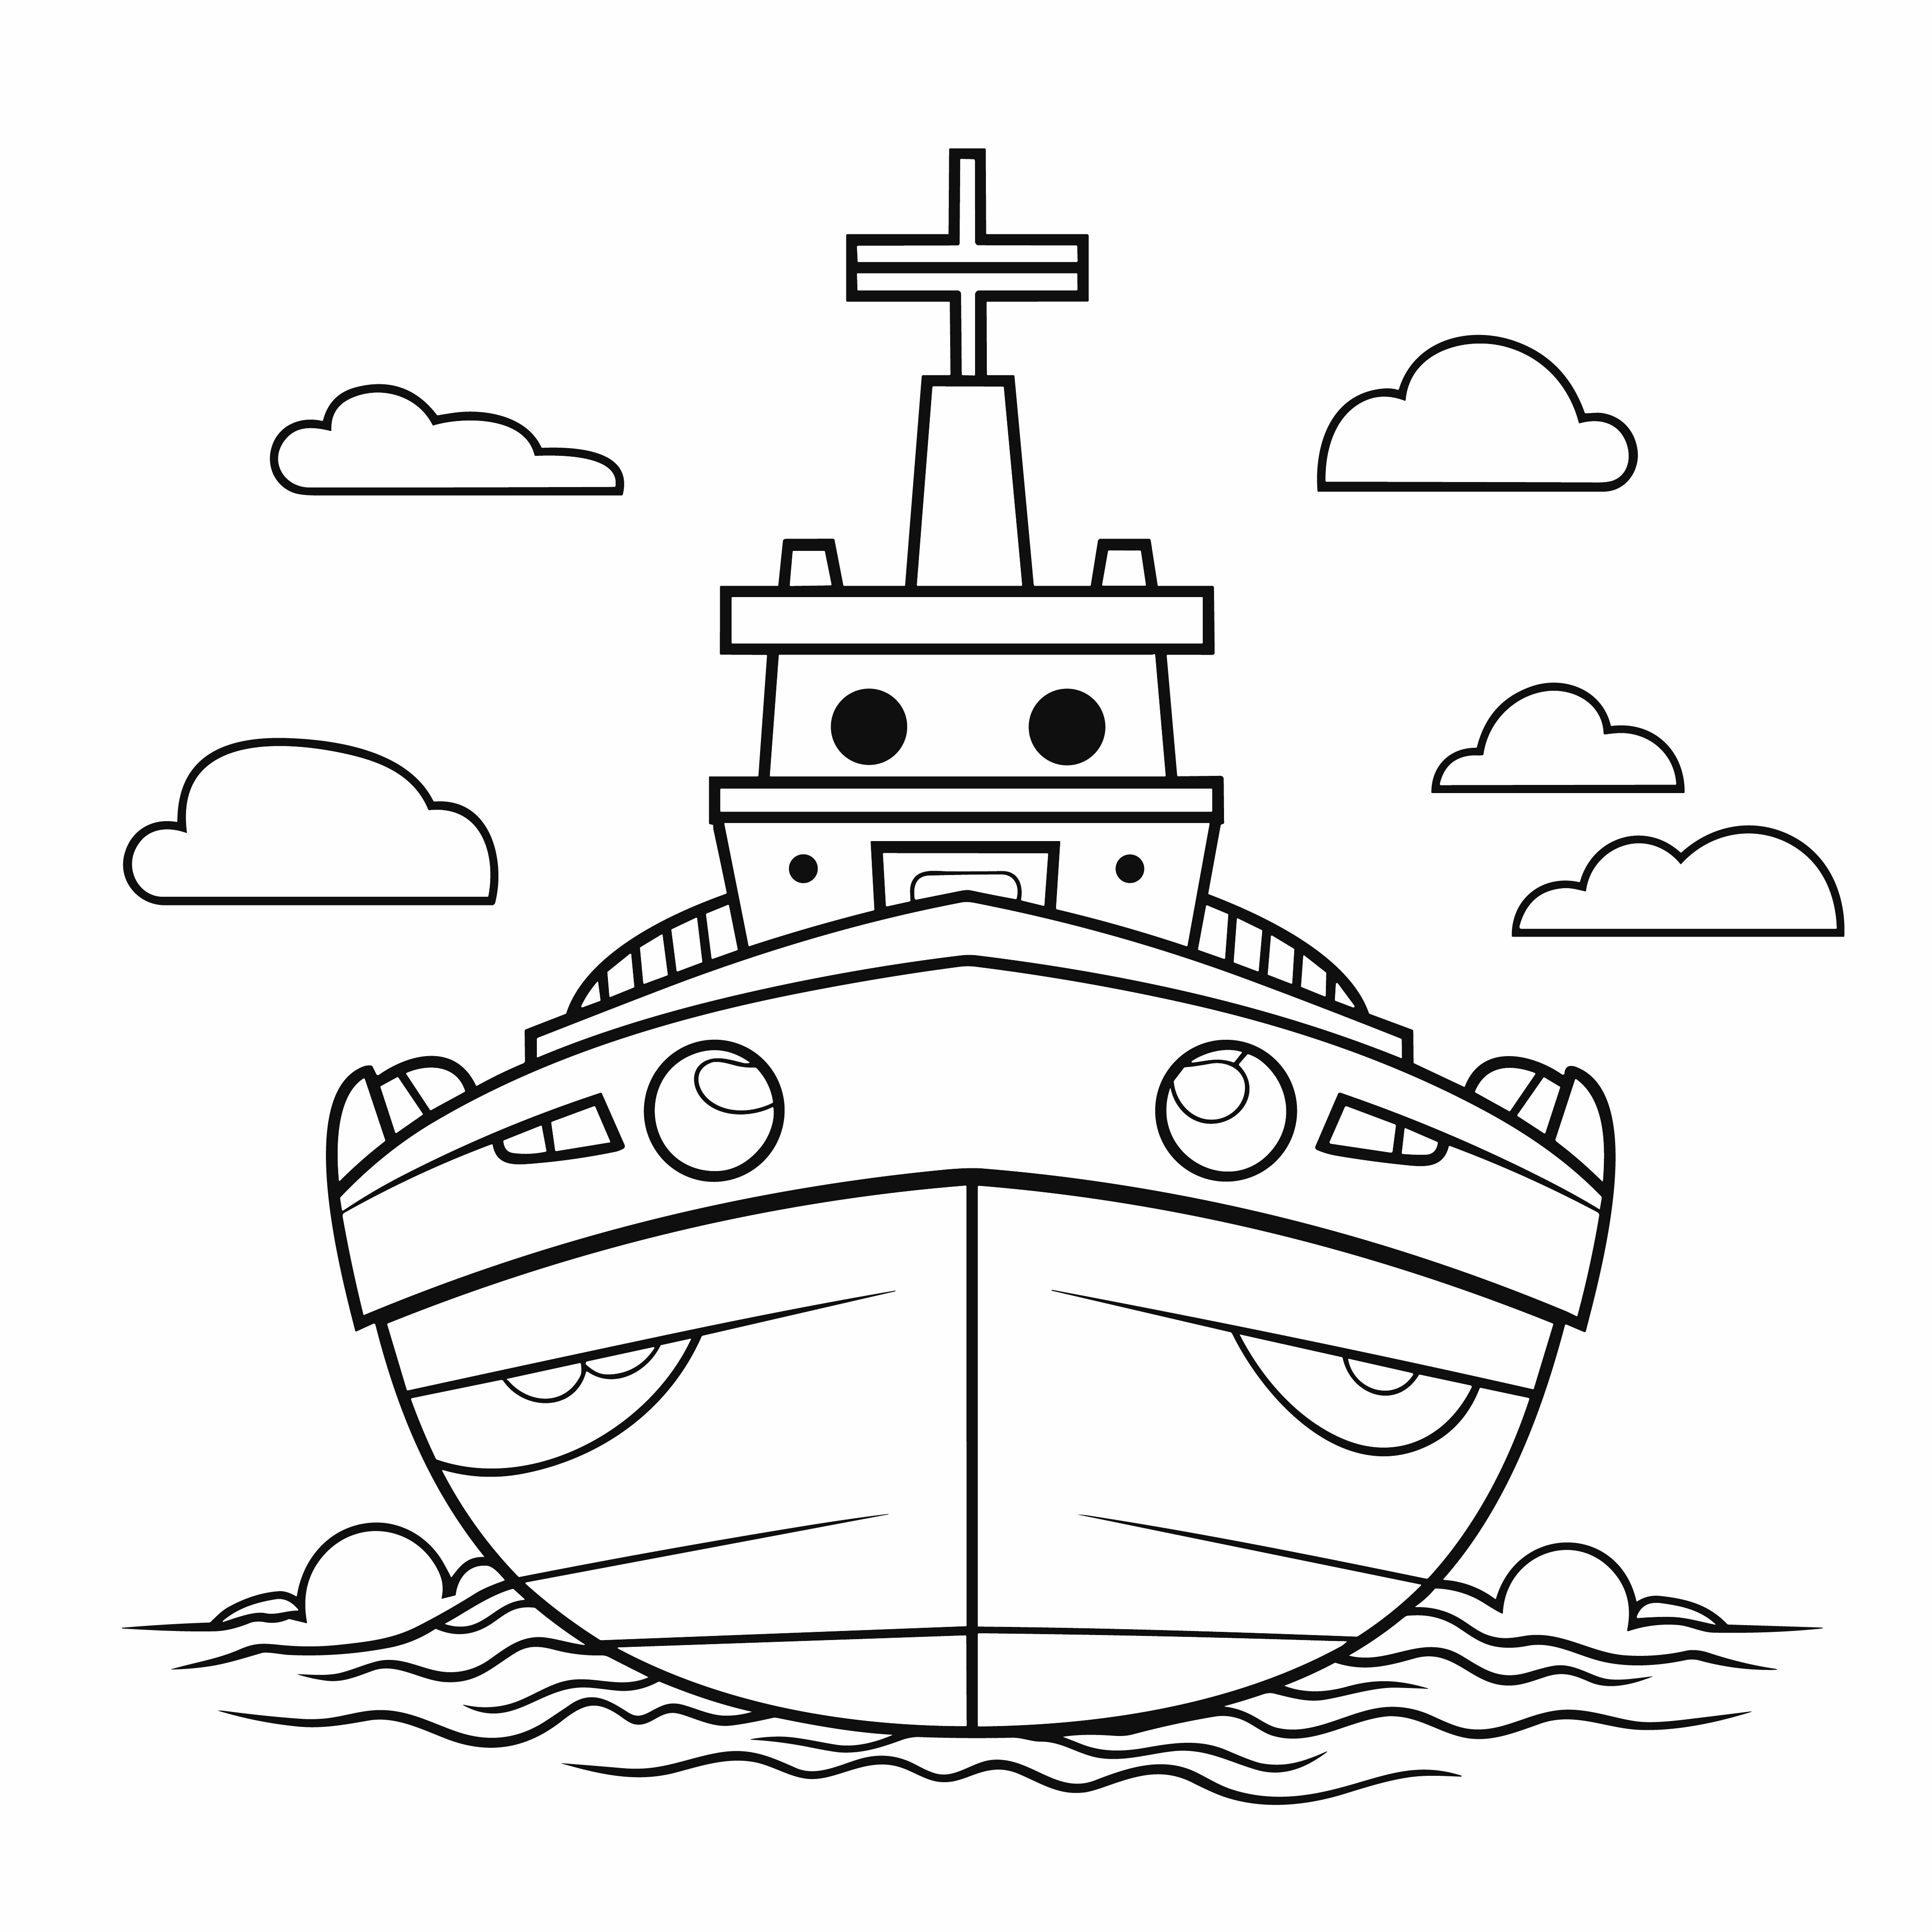 Раскраска корабль идет по морю на фоне облаков формата А4 в высоком качестве